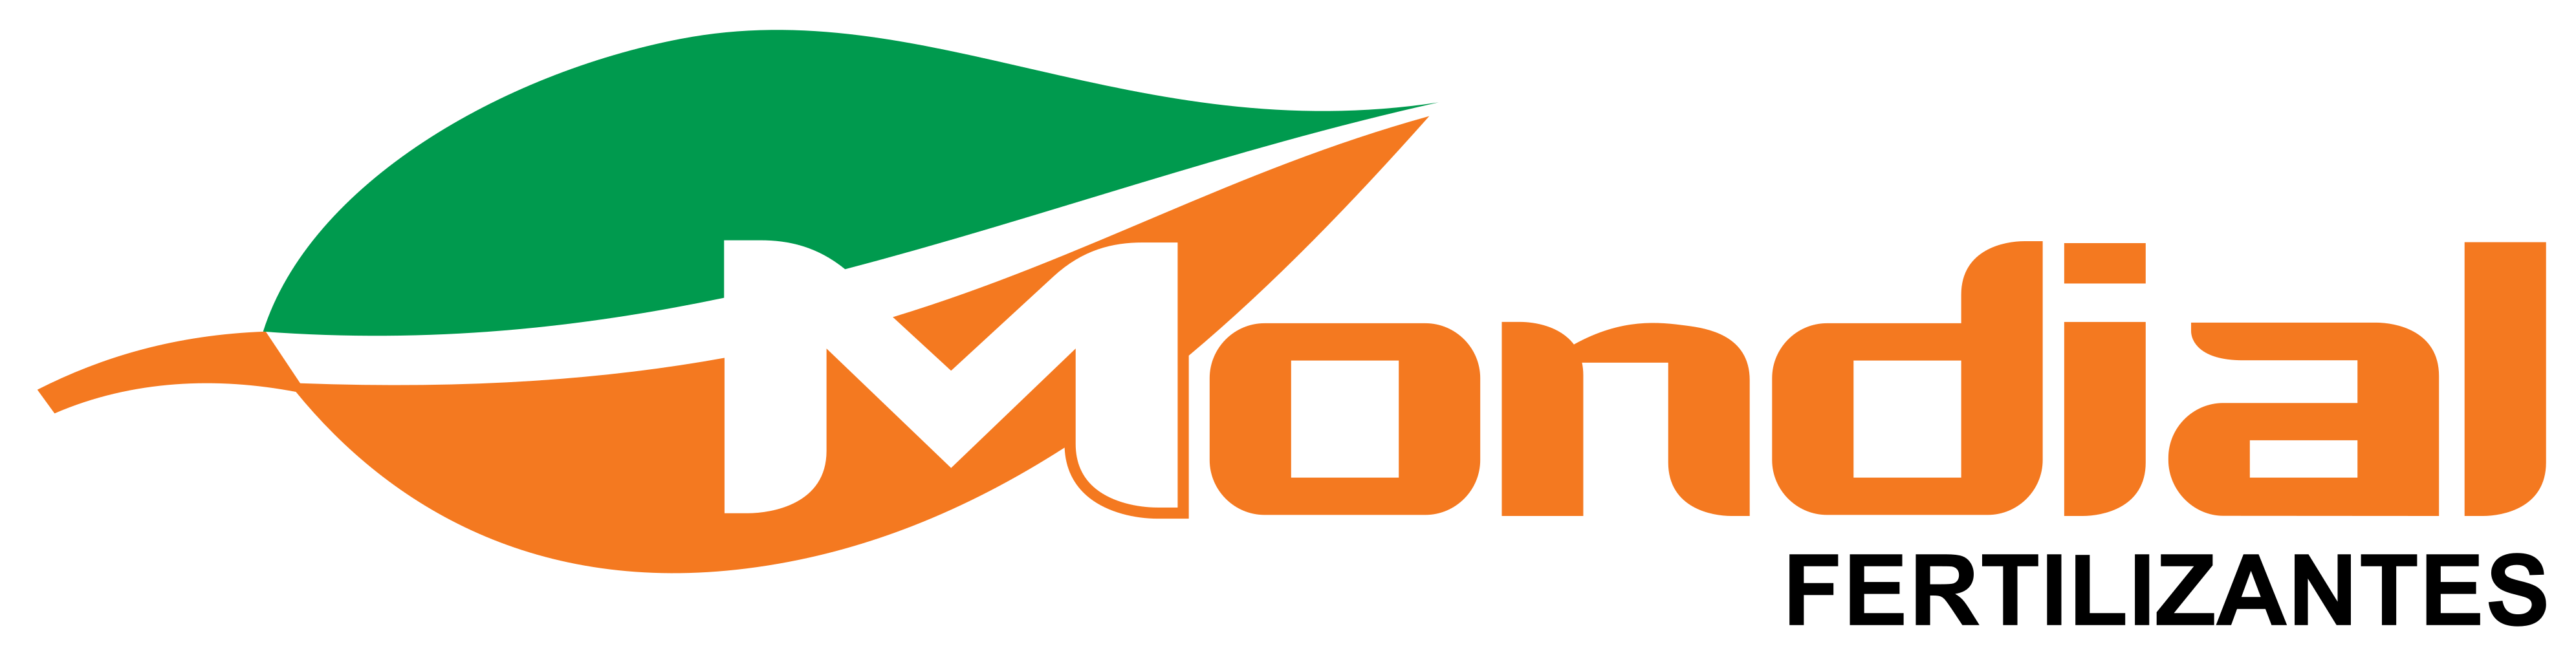 logo-mondial